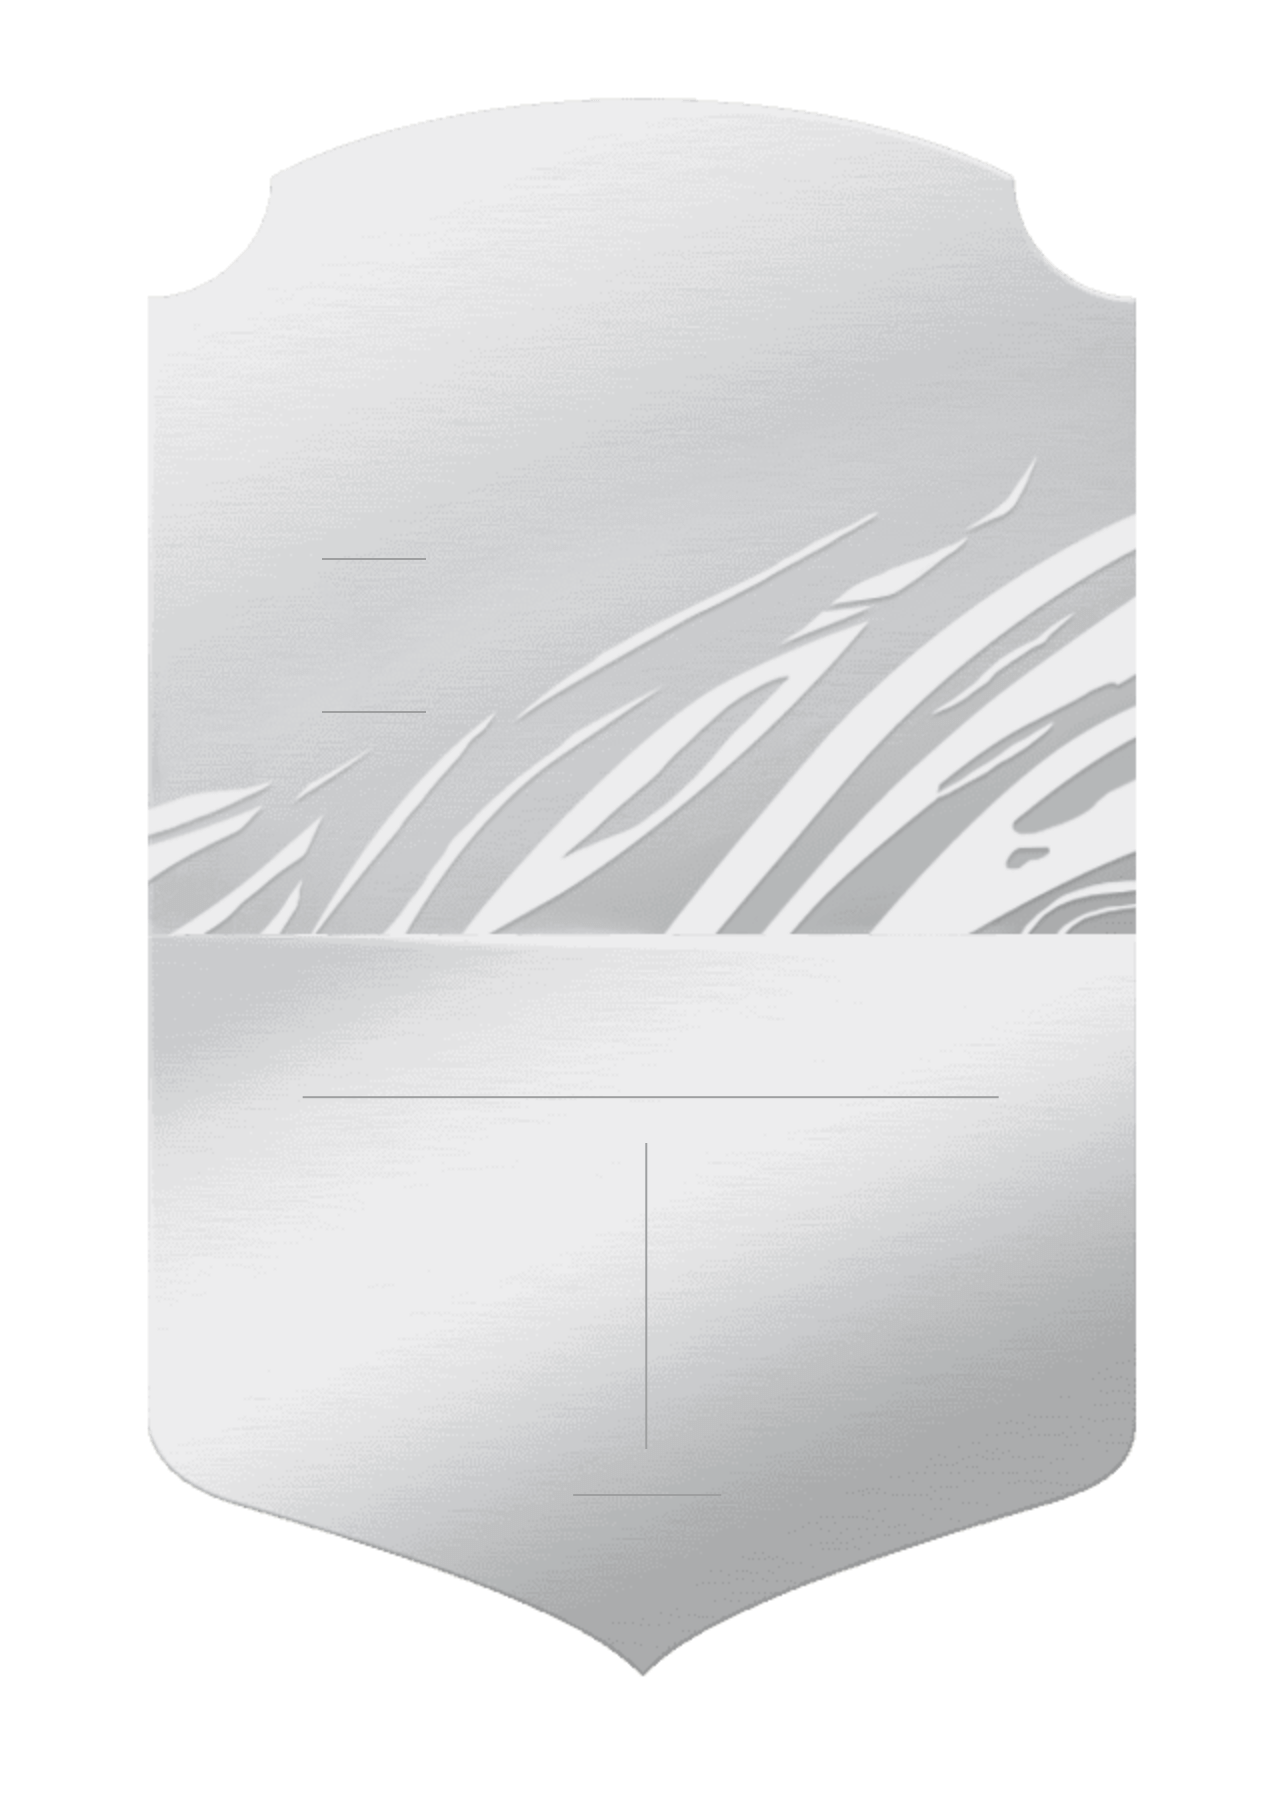 FIFA 21: official Silver card design